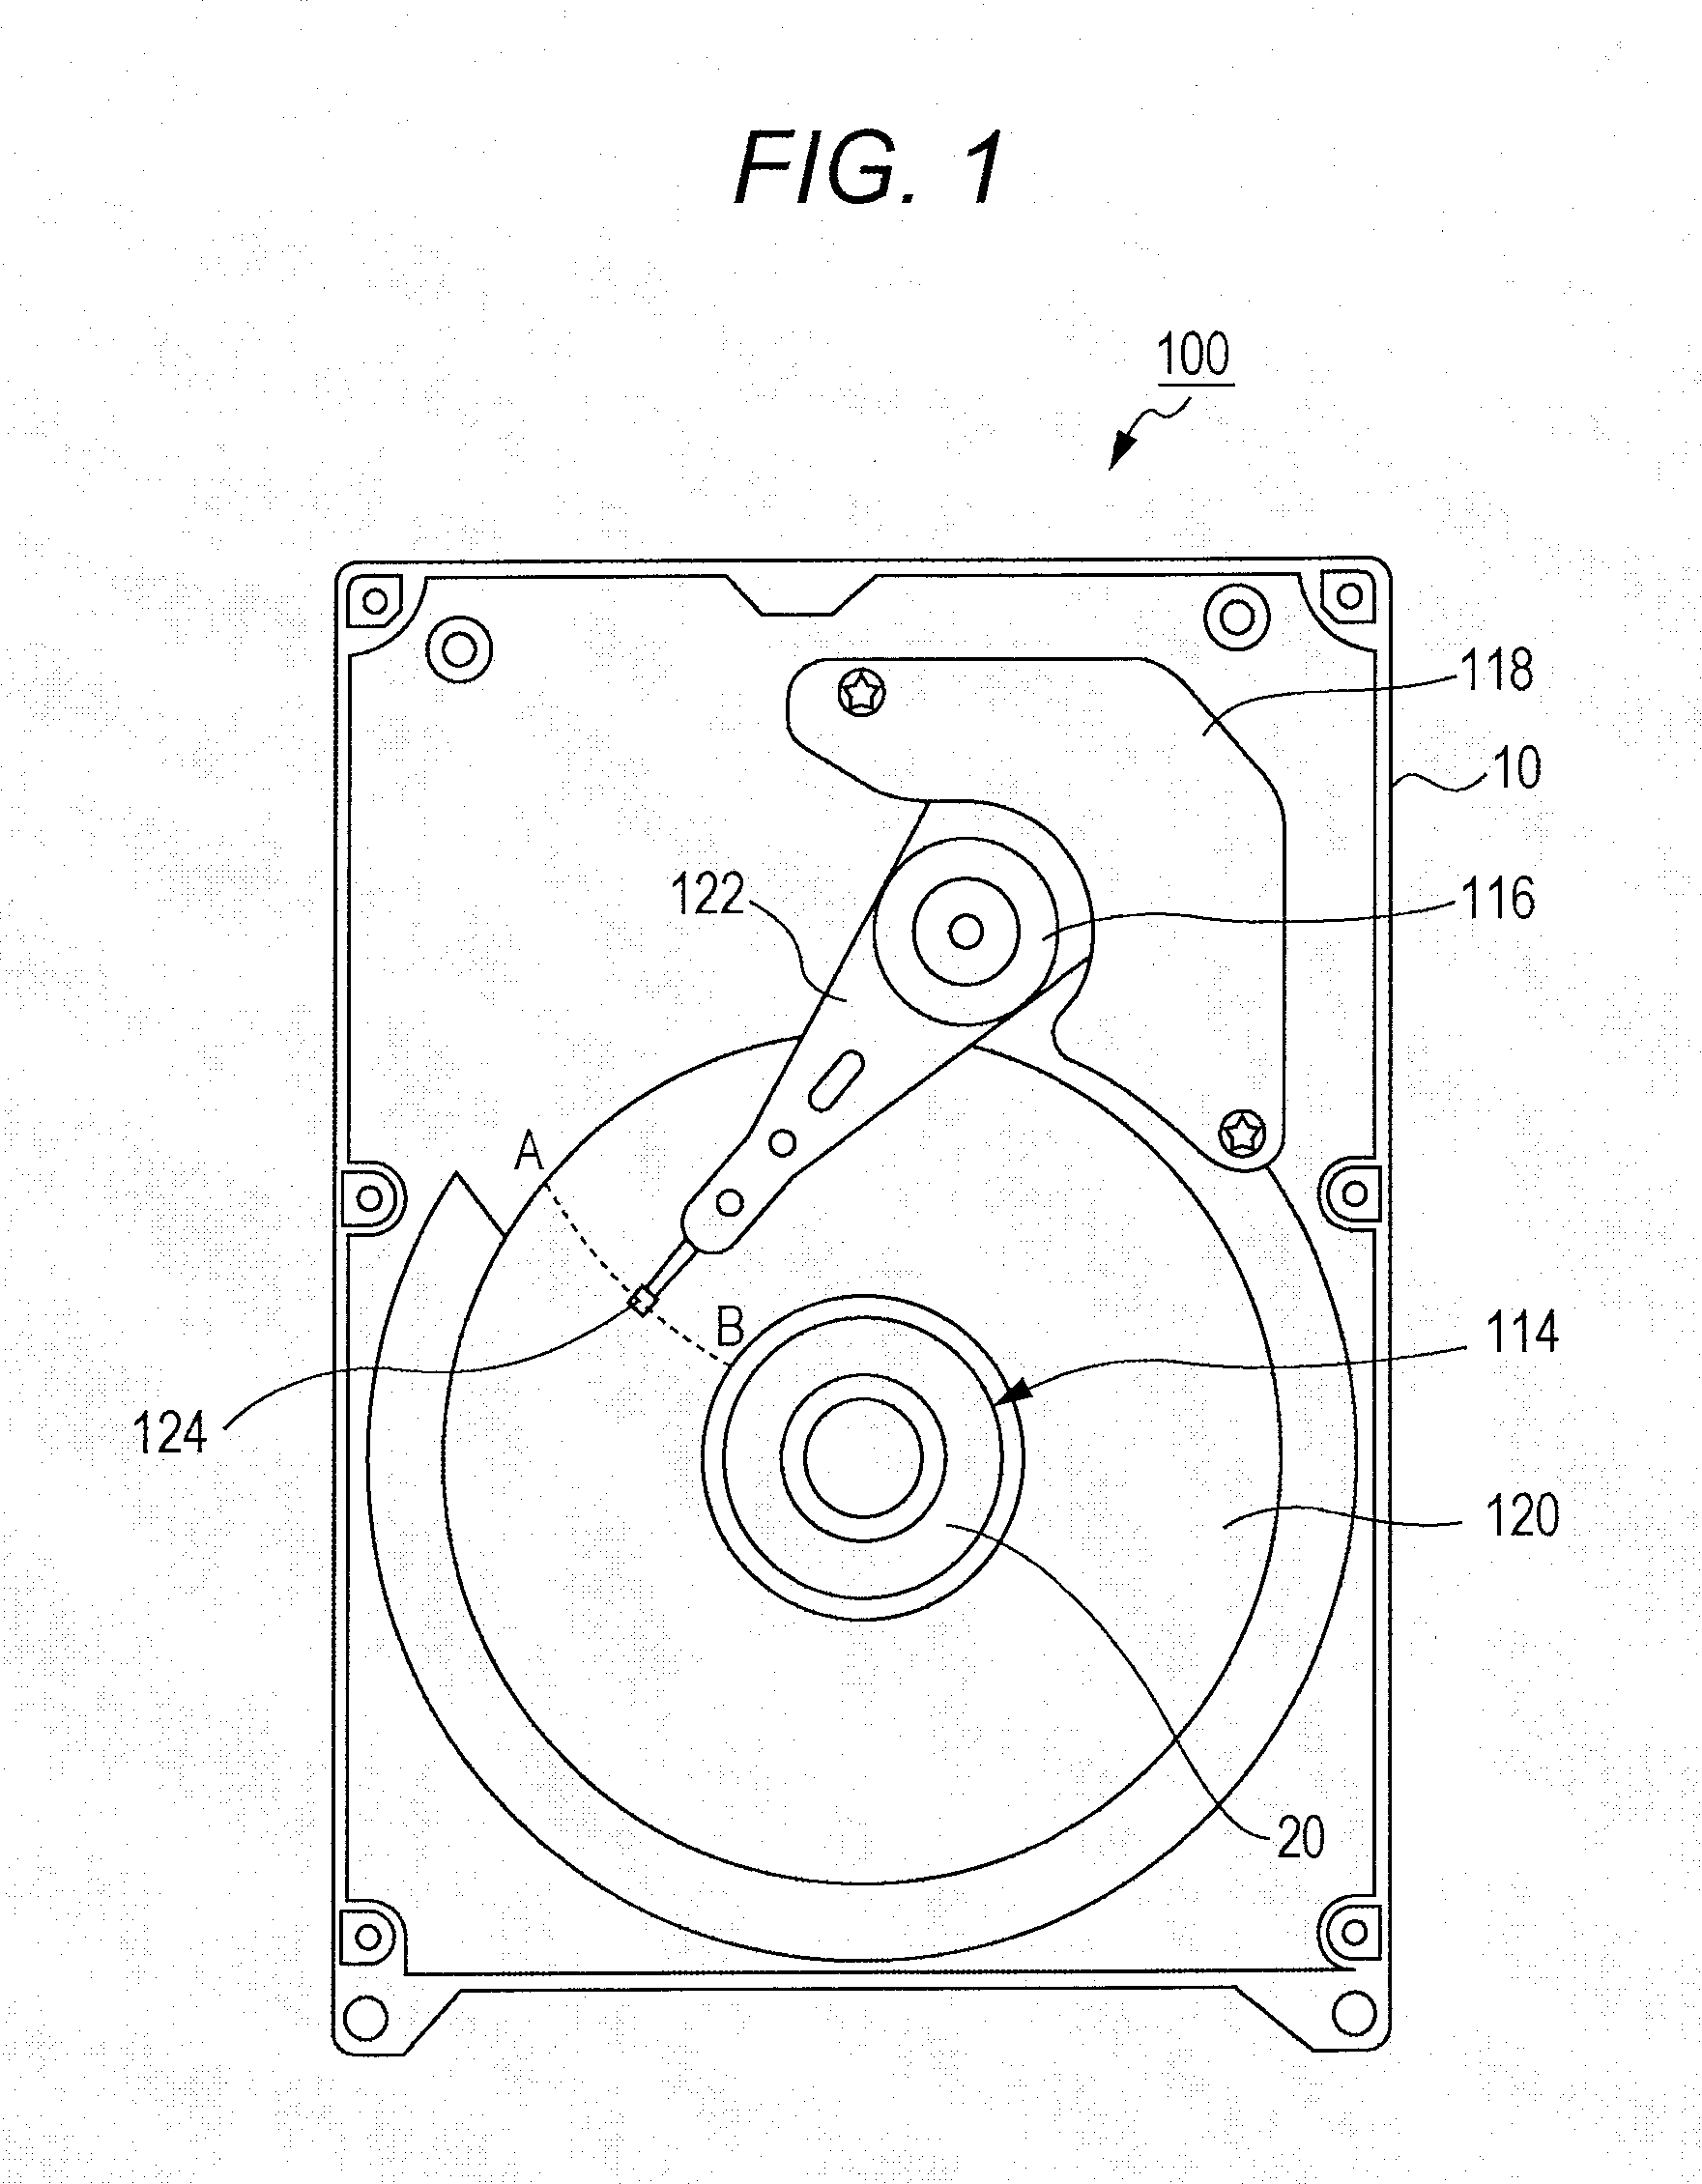 Rotary device